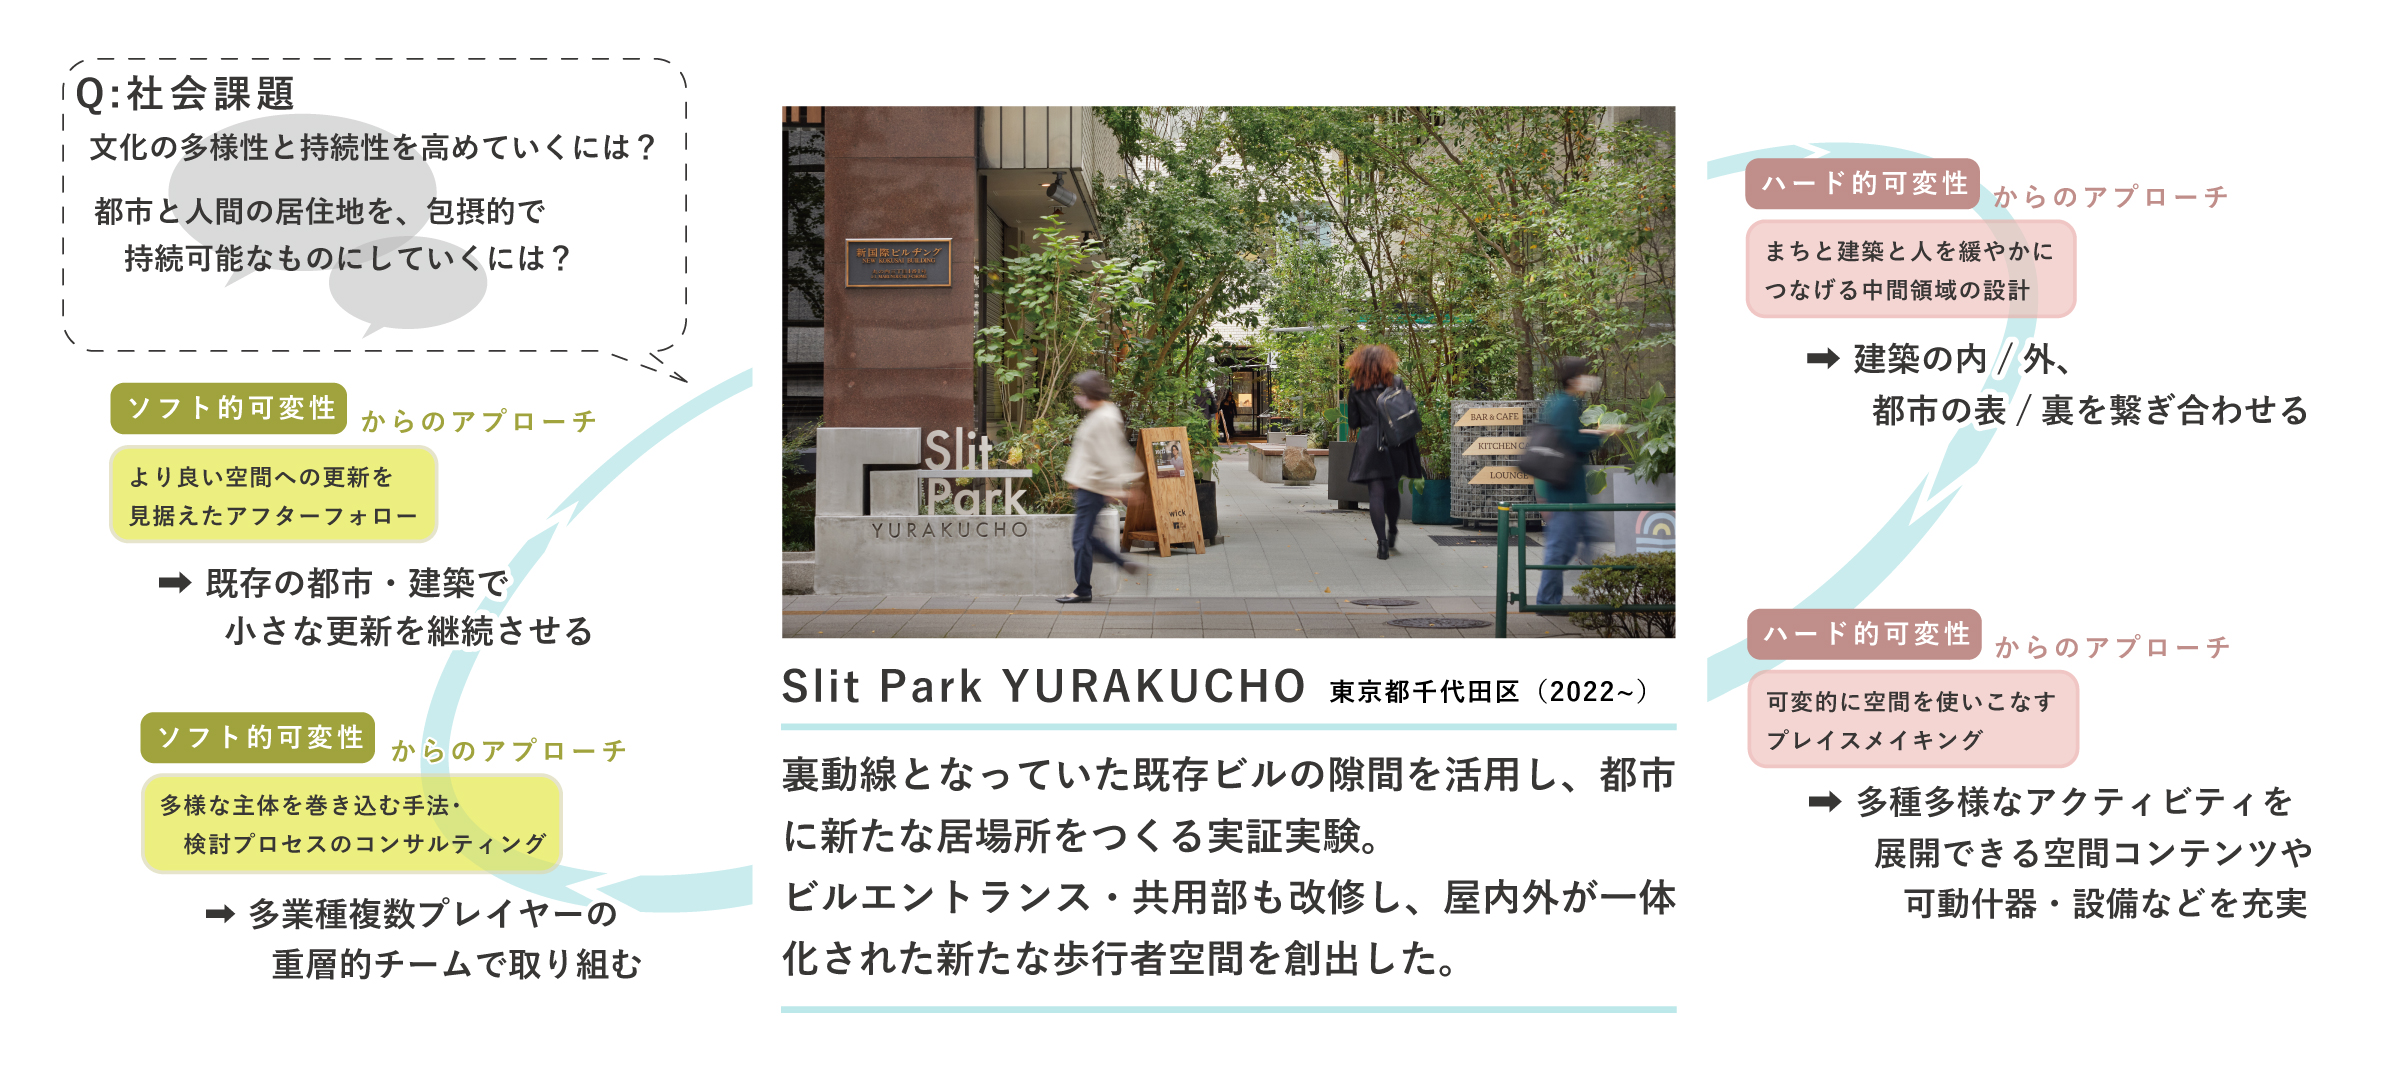 「ホワイトインフラ思考」で読み解くプロジェクト例 ②　Slit Park YURAKUCHO